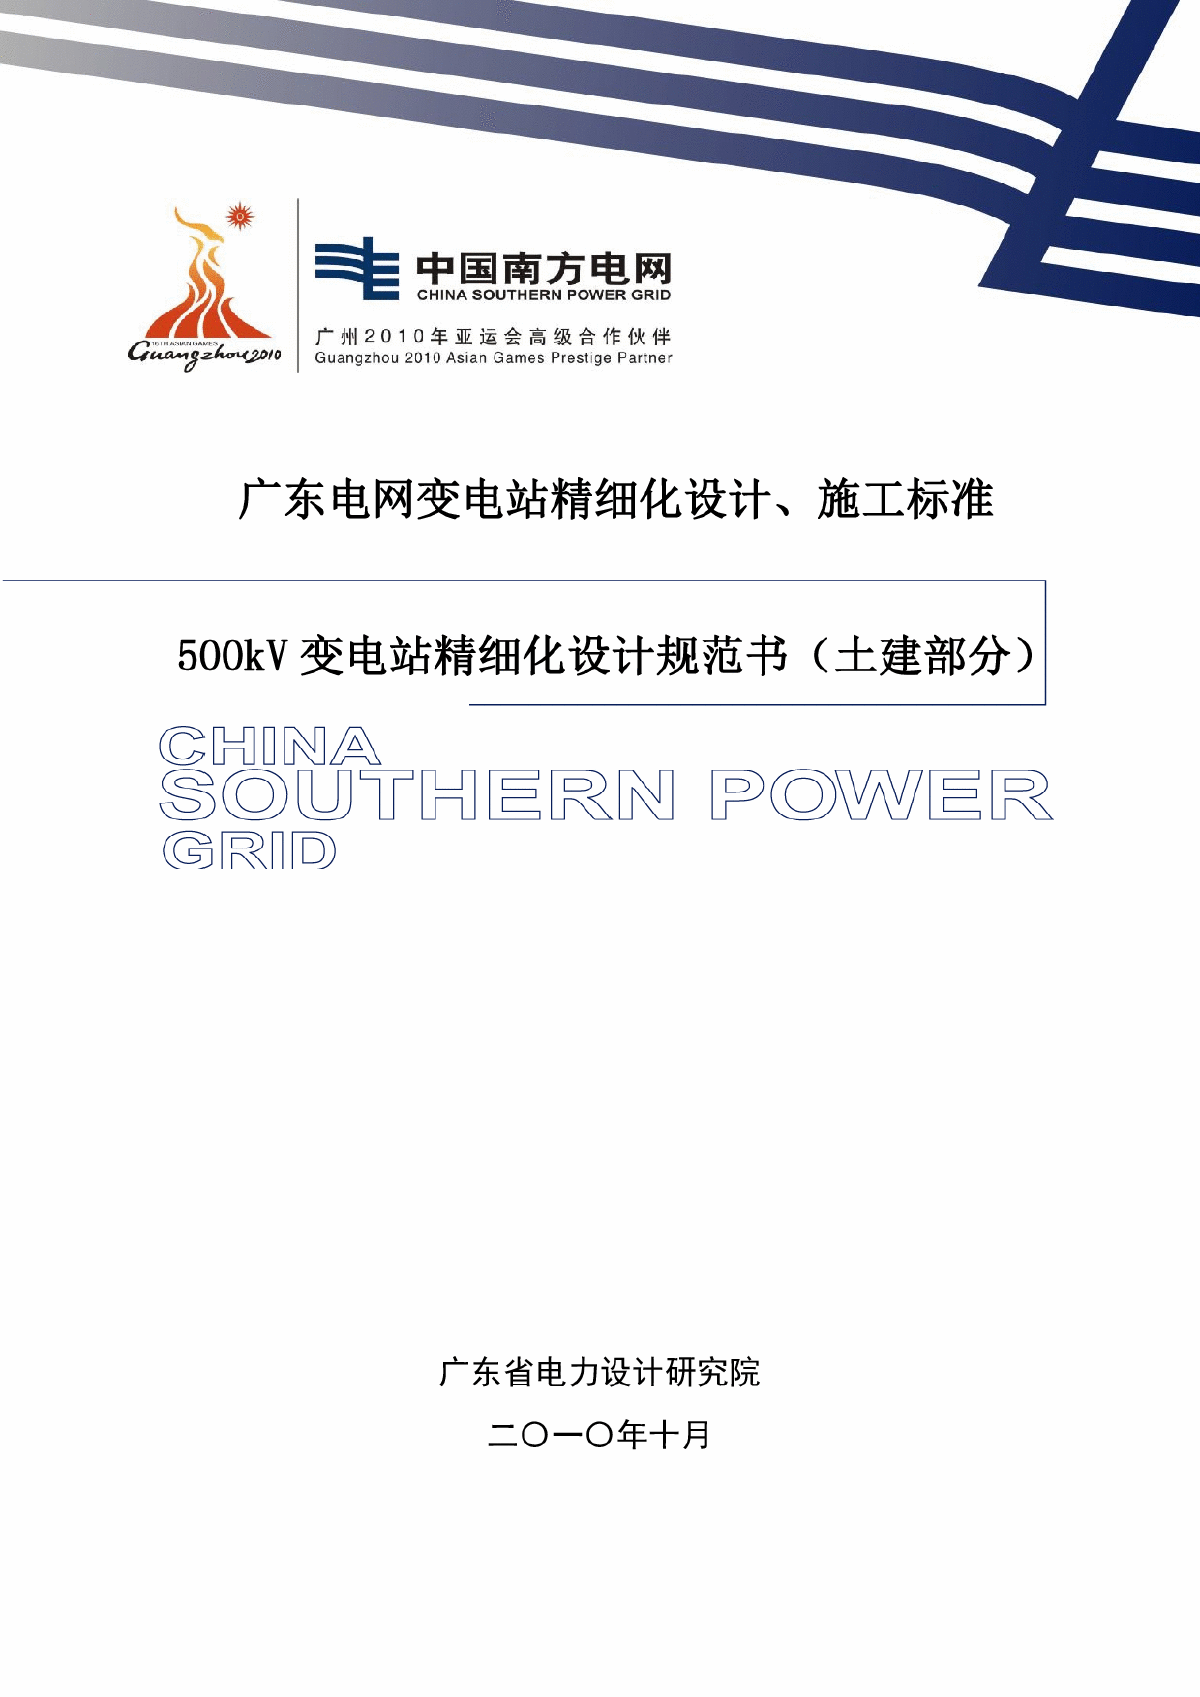 广东电网变电站精细化设计施工标准(土建部分)